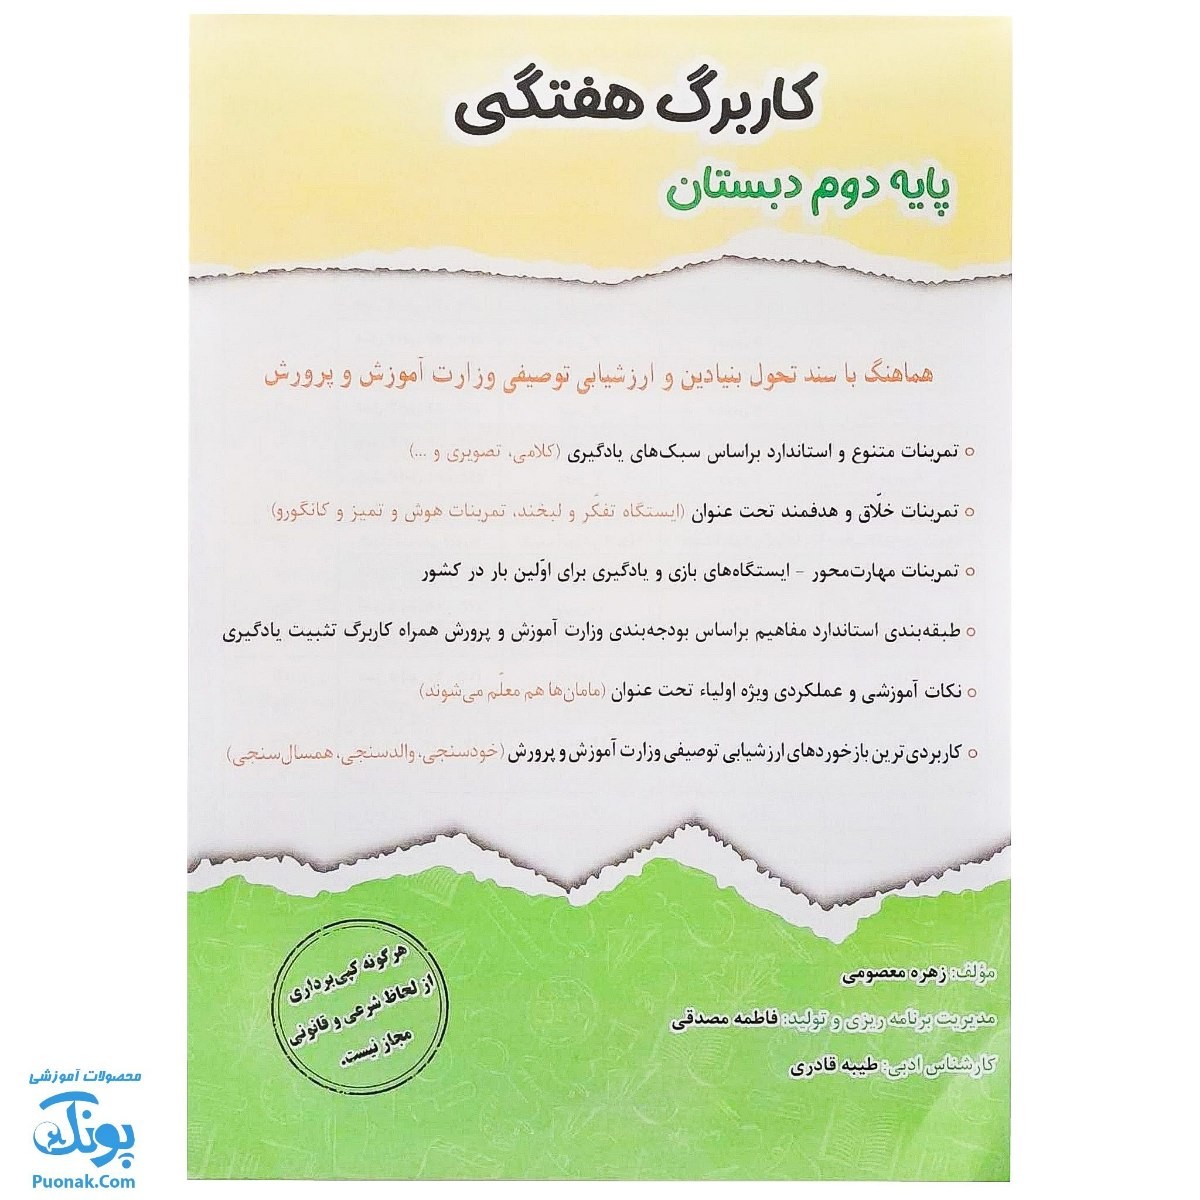 کاربرگ هفتگی پایه دوم دبستان حسامی (هماهنگ با آخرین عملکرد ارزشیابی کیفی - توصیفی وزارت آموزش و پرورش)